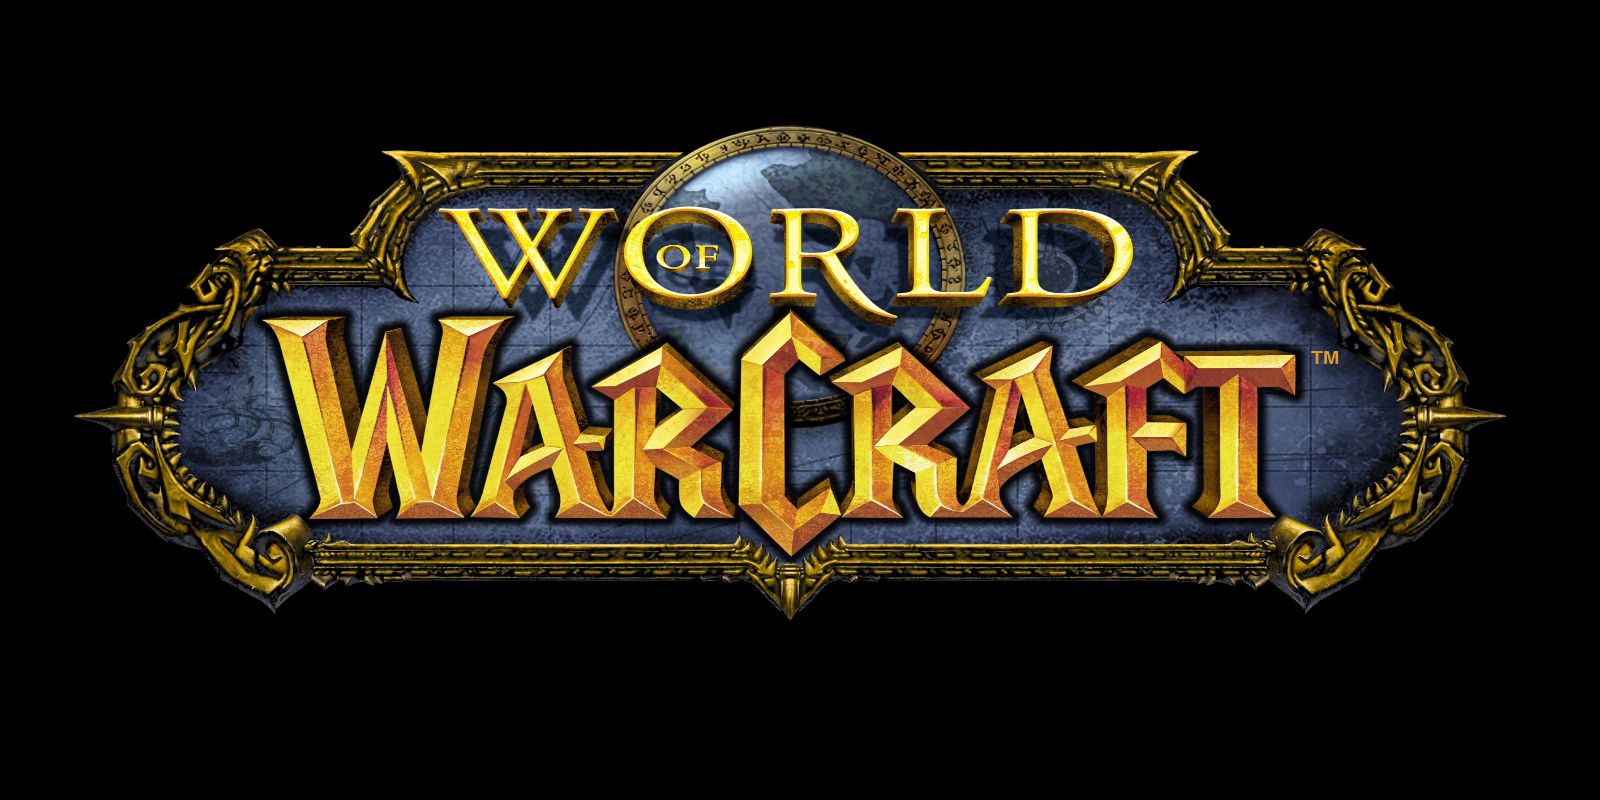 Image of World of Warcraft